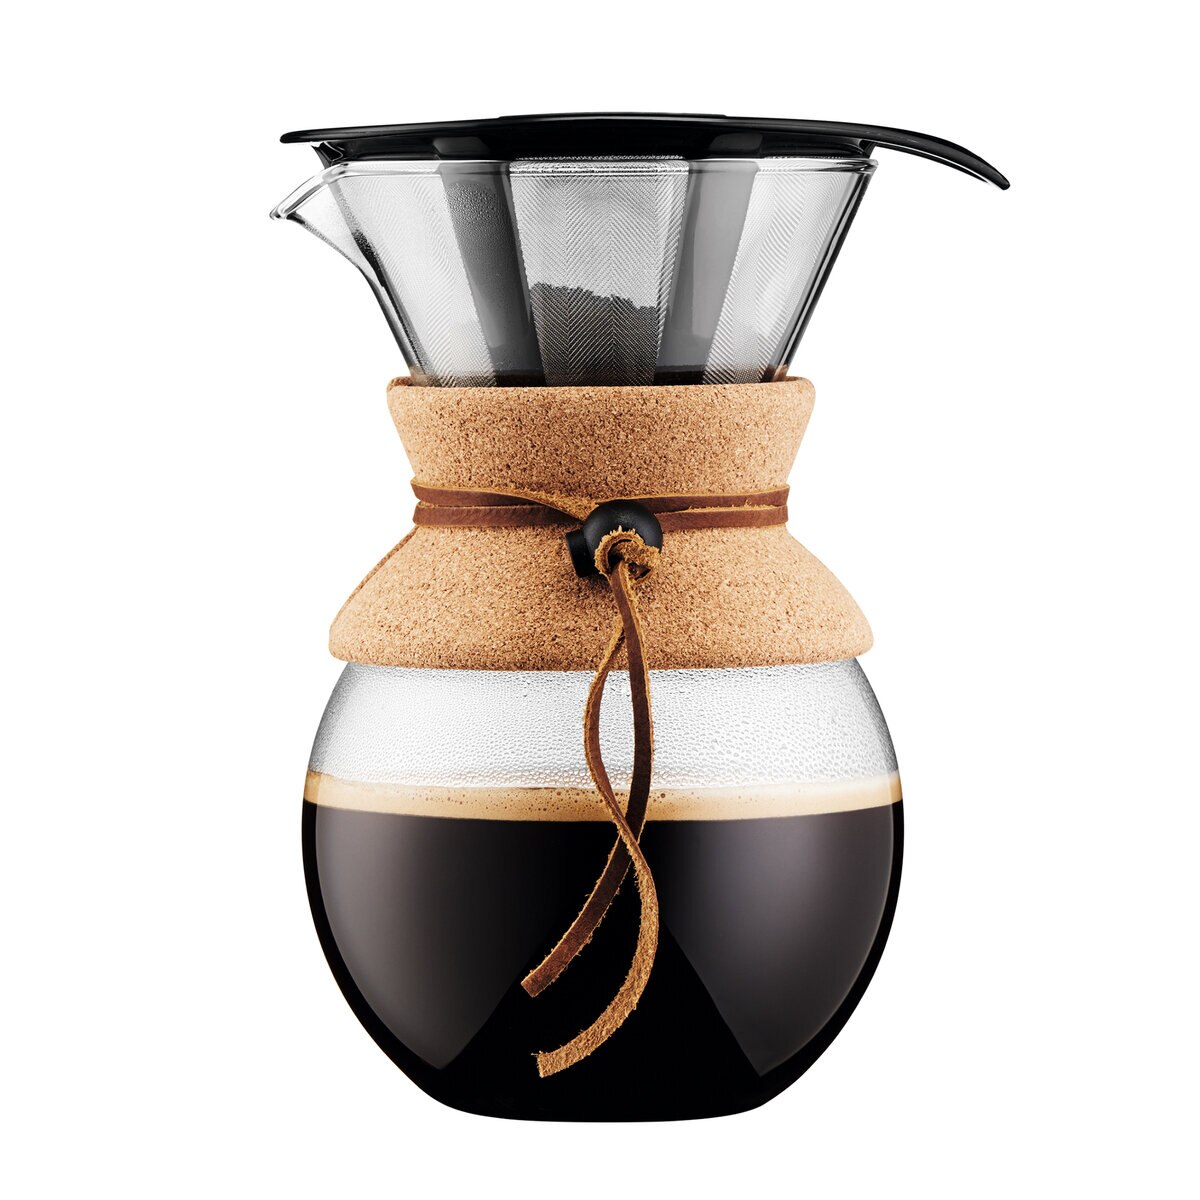 ボダム プアオーバー ドリップ式コーヒーメーカー1.0L